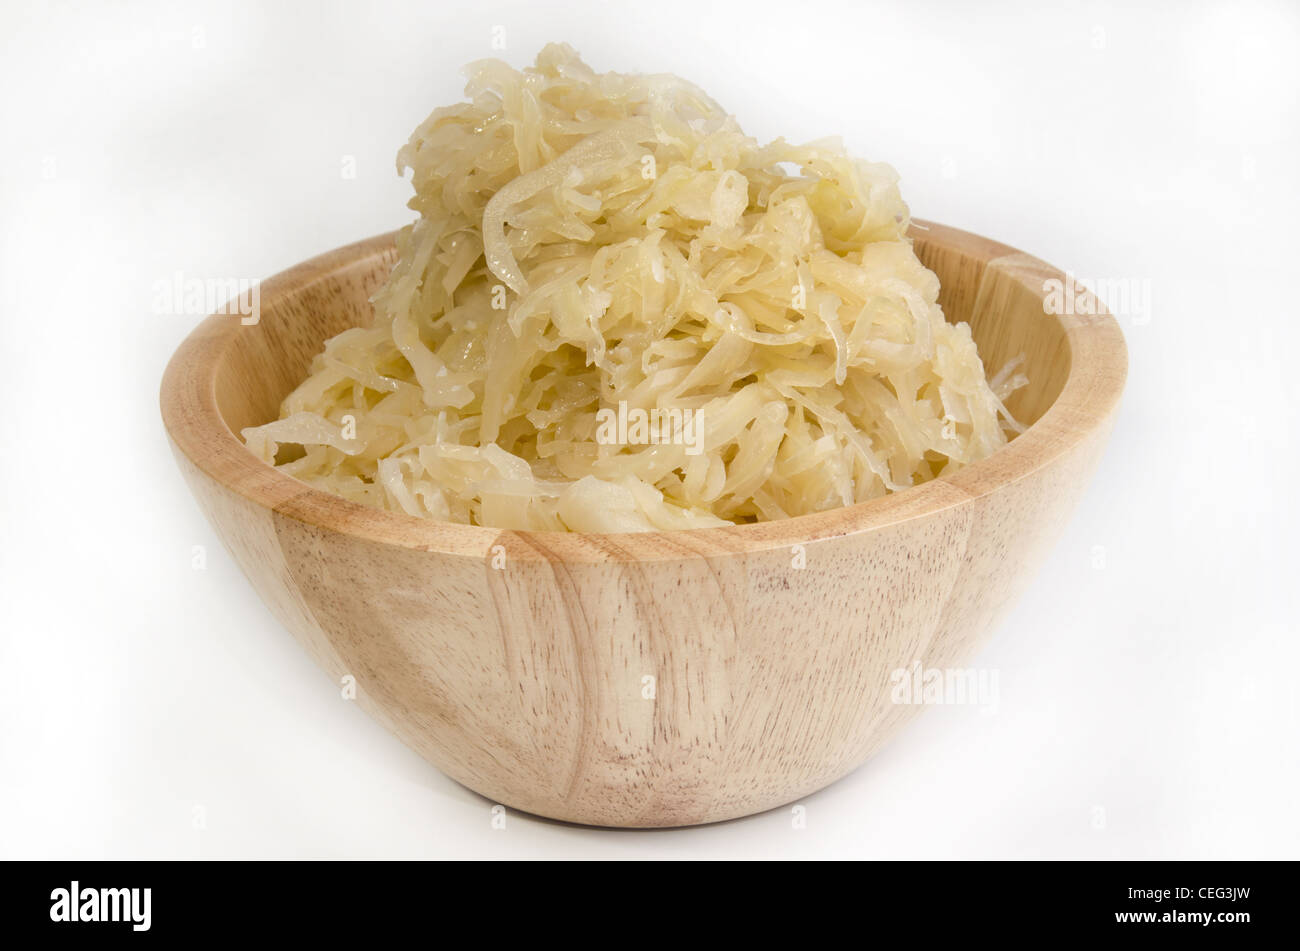 homemade sauerkraut in a wooden bowl Stock Photo